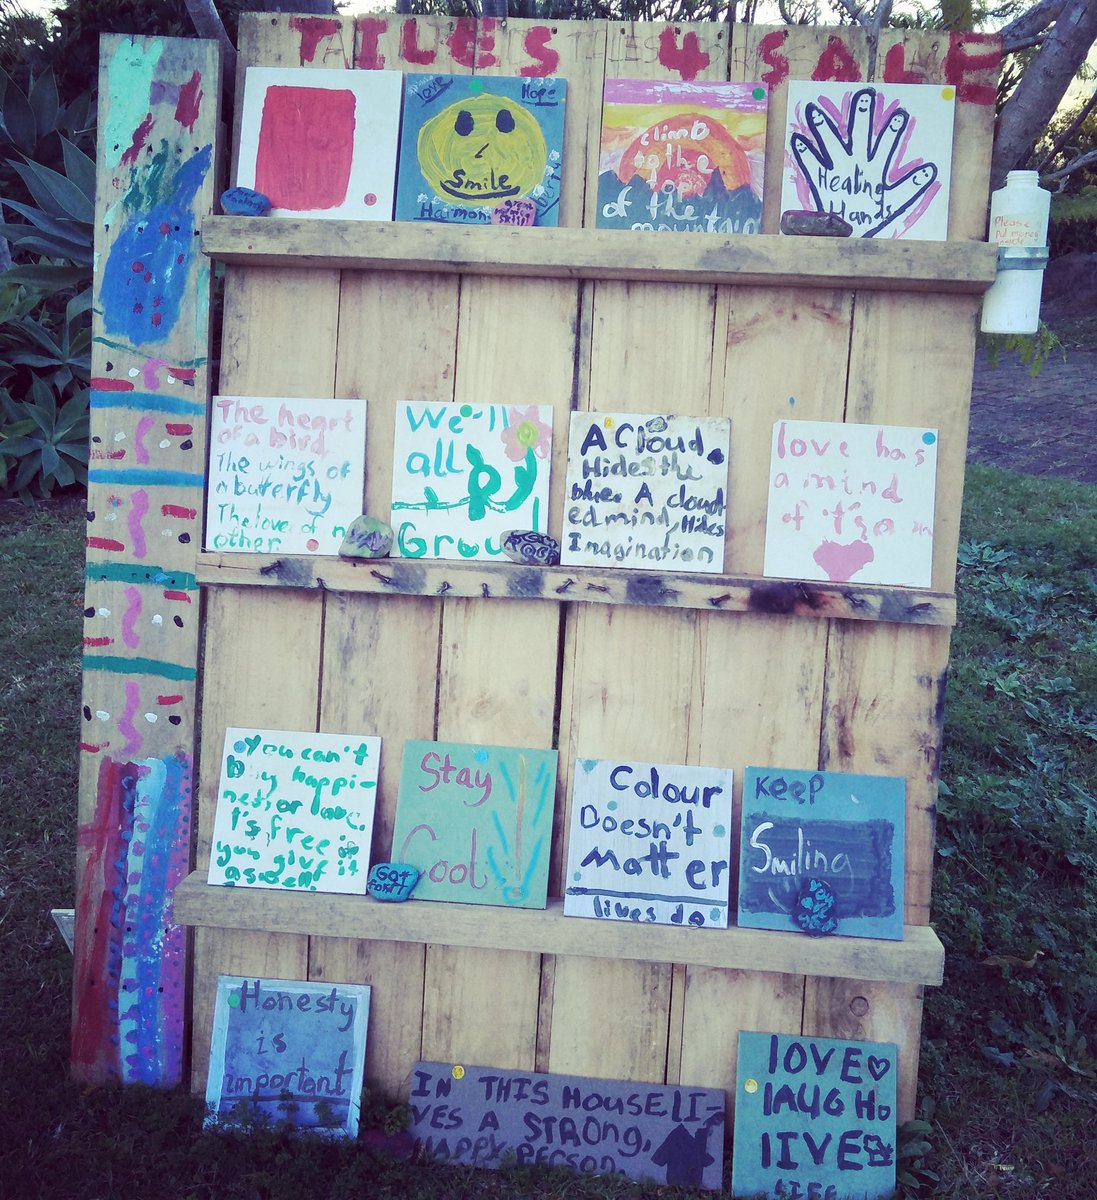 犬のお散歩中、ご近所さんで見つけた #honestybox 無人販売所。子供が描いたであろうタイルアートが売られてて可愛い! ちゃんとメッセージ性のある #quotes が描いてある😉
#colourdoesntmatterlivesdo. 
#keepsmiling #honestyisimportant #healinghands #wellallgrow #staycool #lovelaughlive